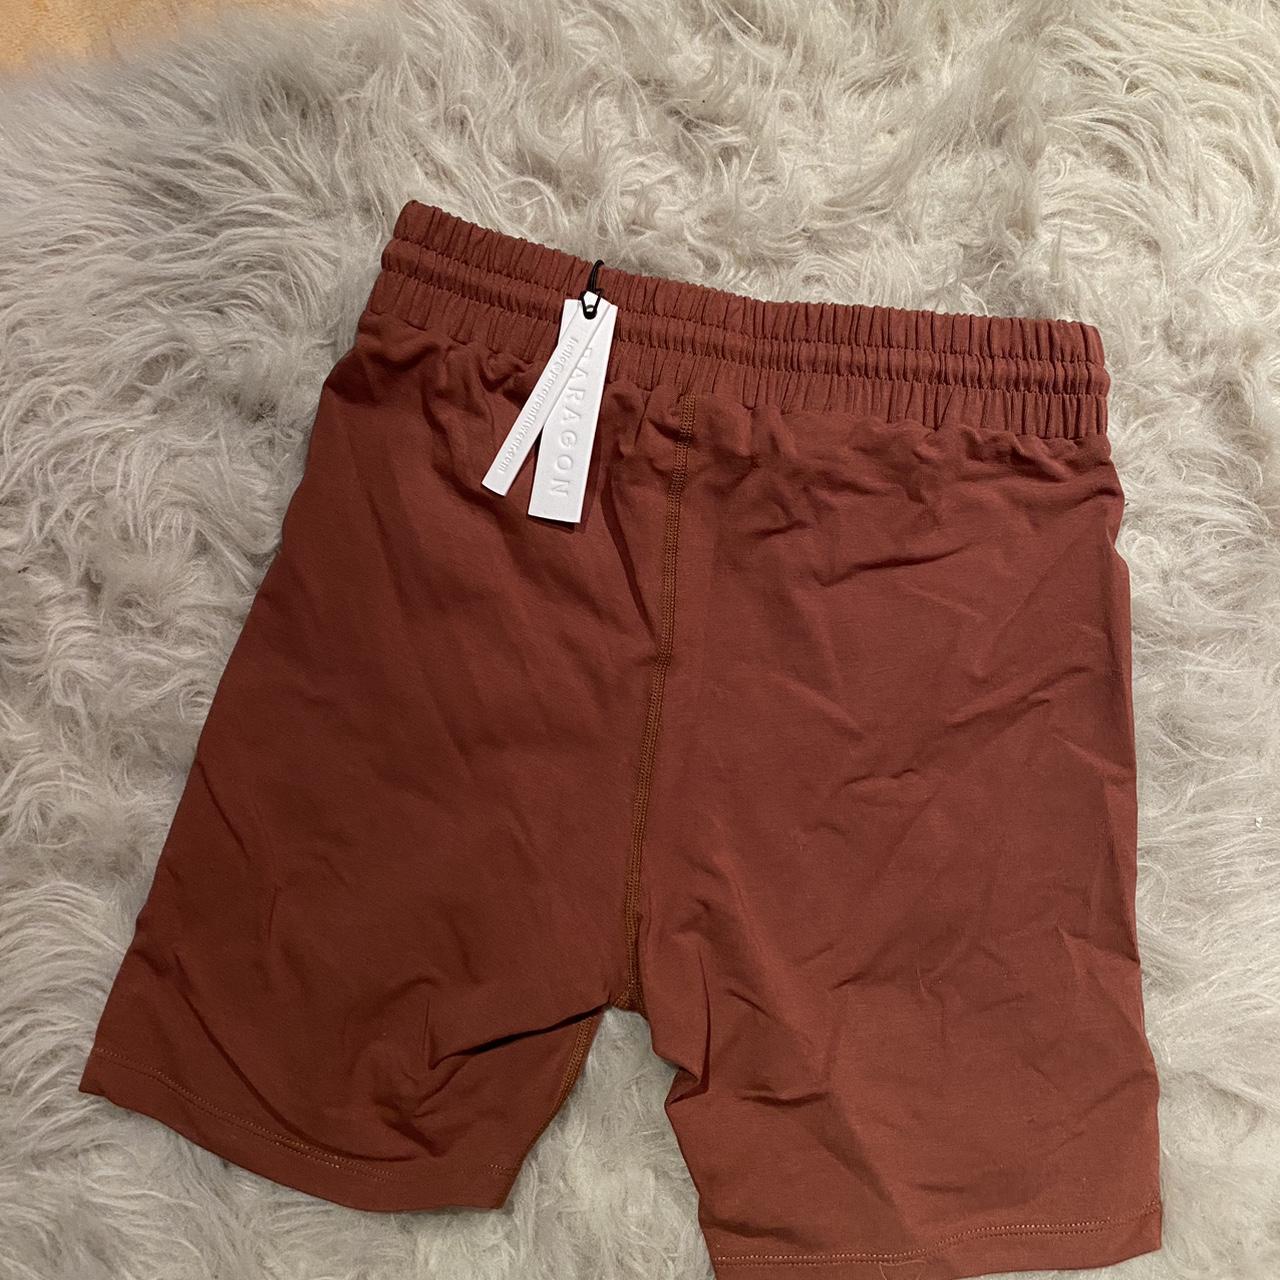 Paragon fitwear bioknit lounge shorts (5”) #shorts - Depop